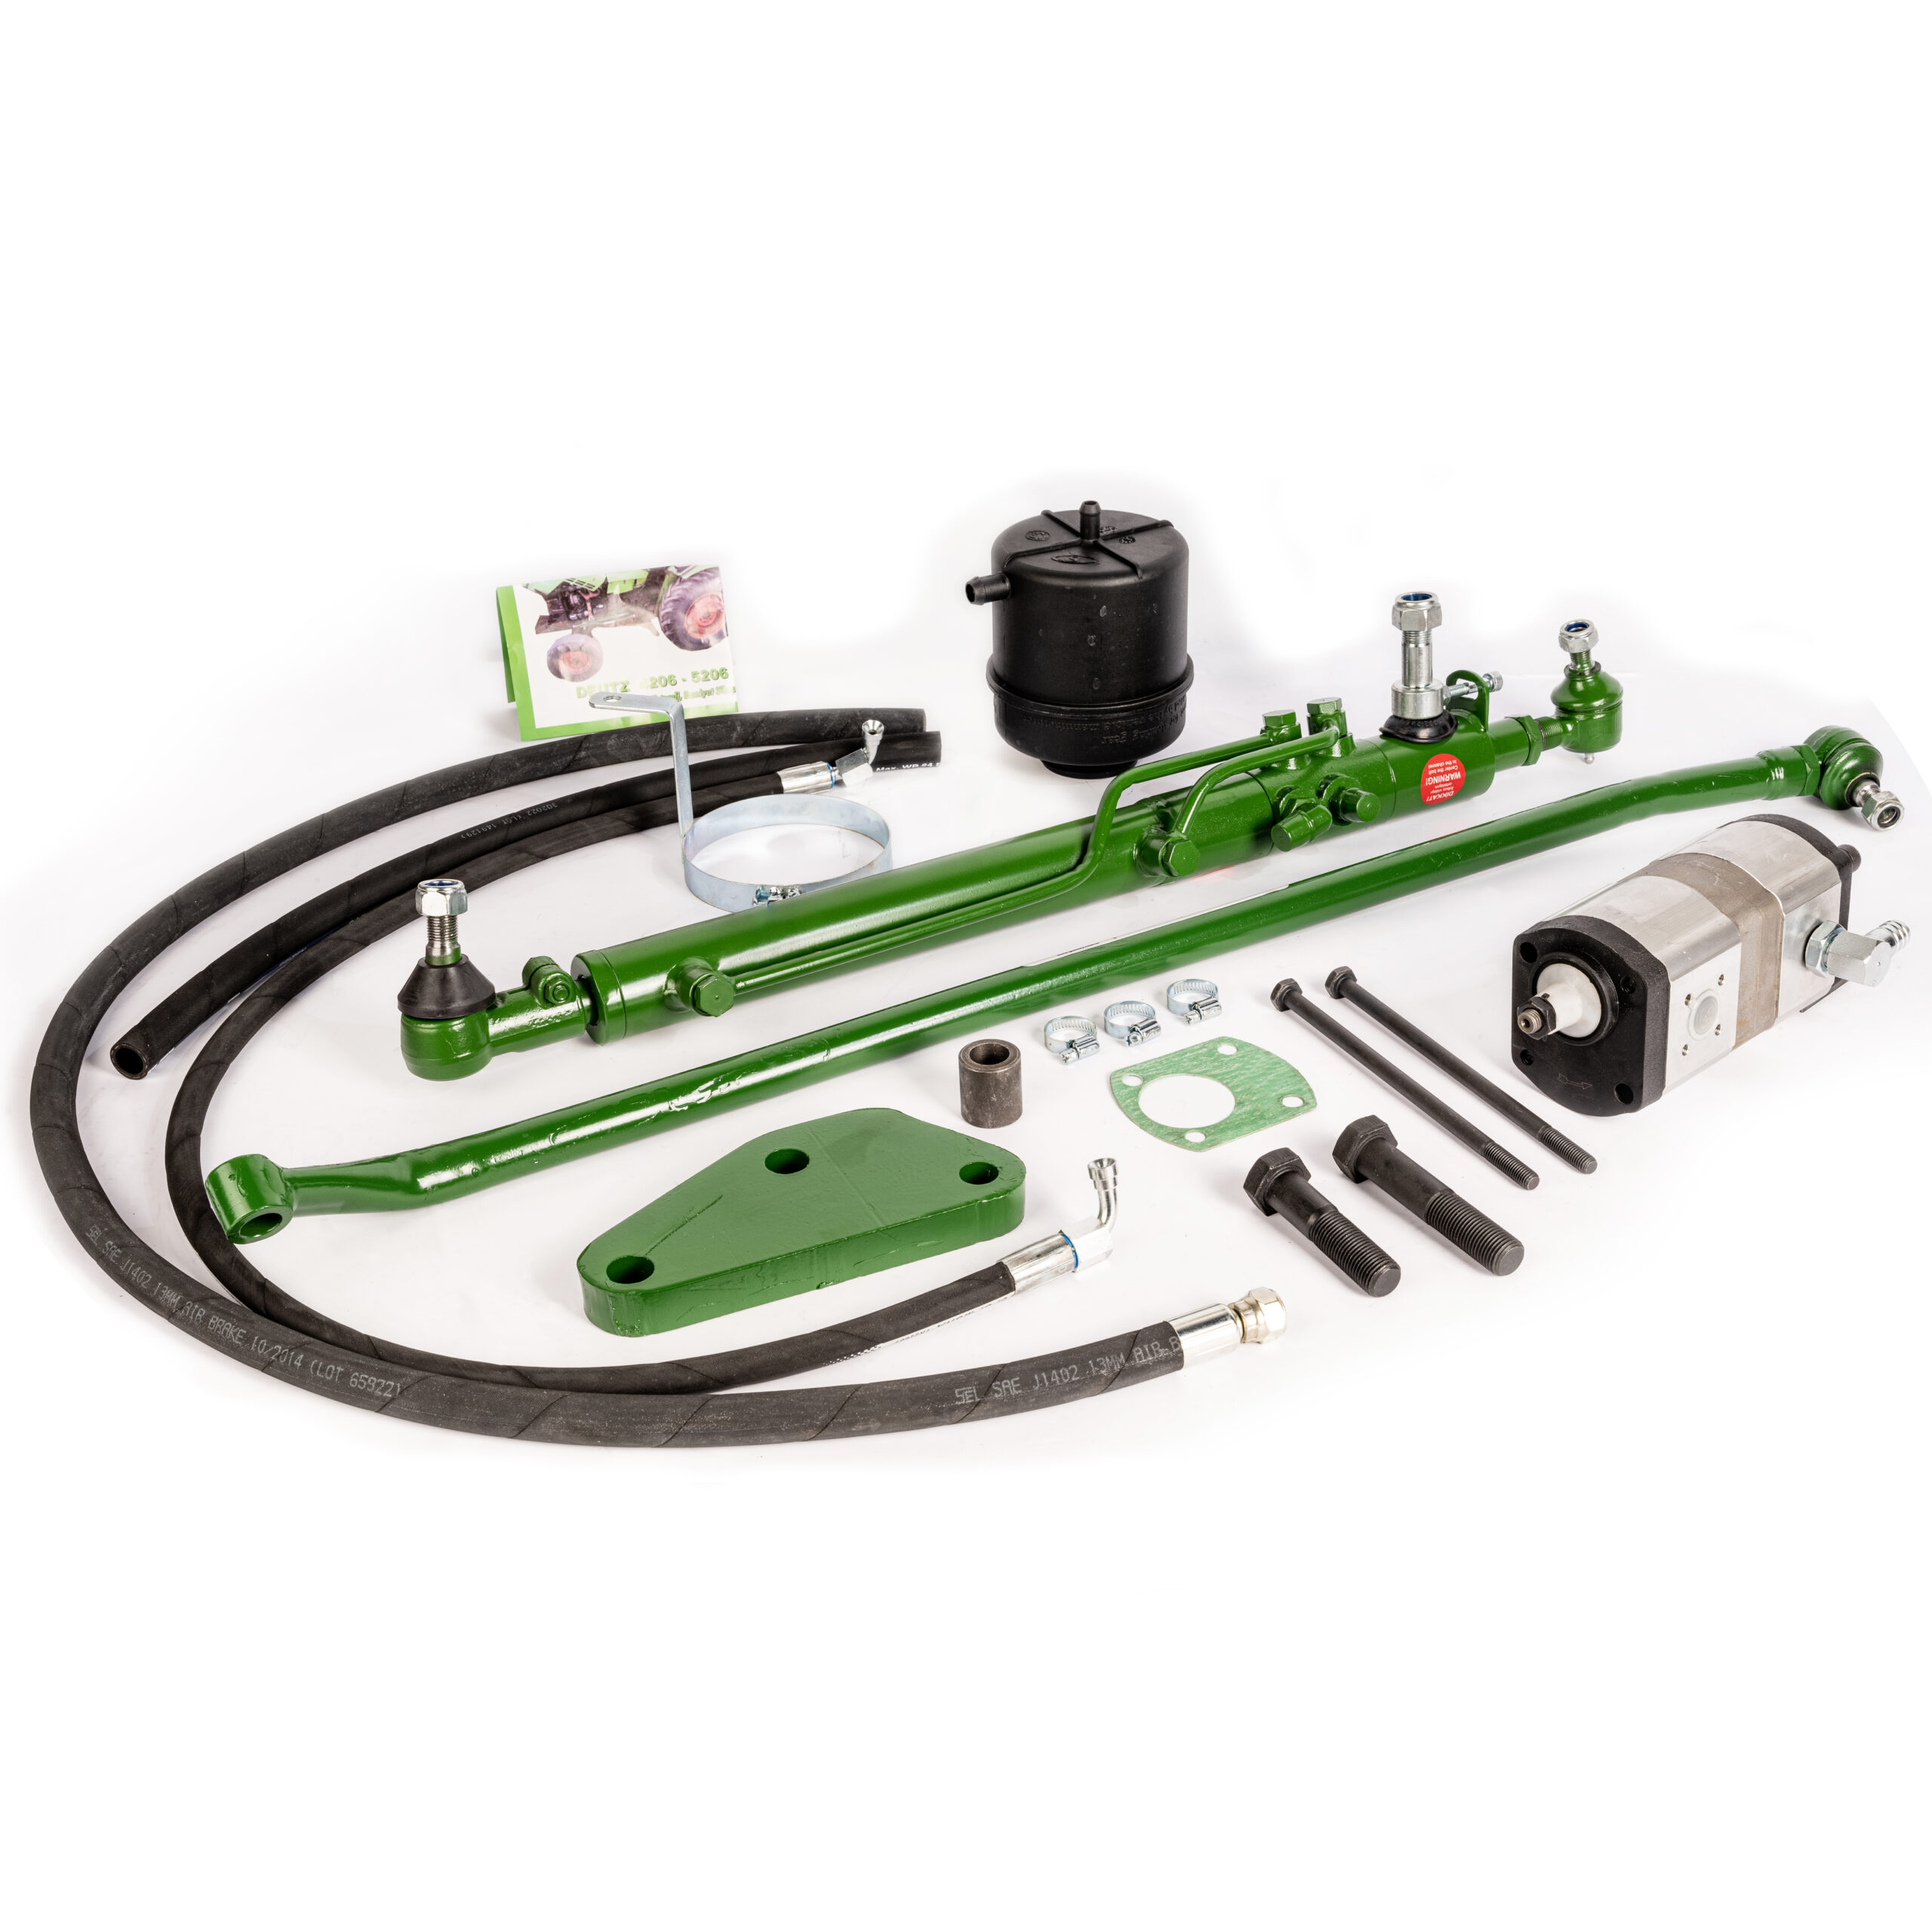 Power Steering Kit for Deutz 5506 6006 6206 6208 6806 7006 6207 6507 – Tandem Pump